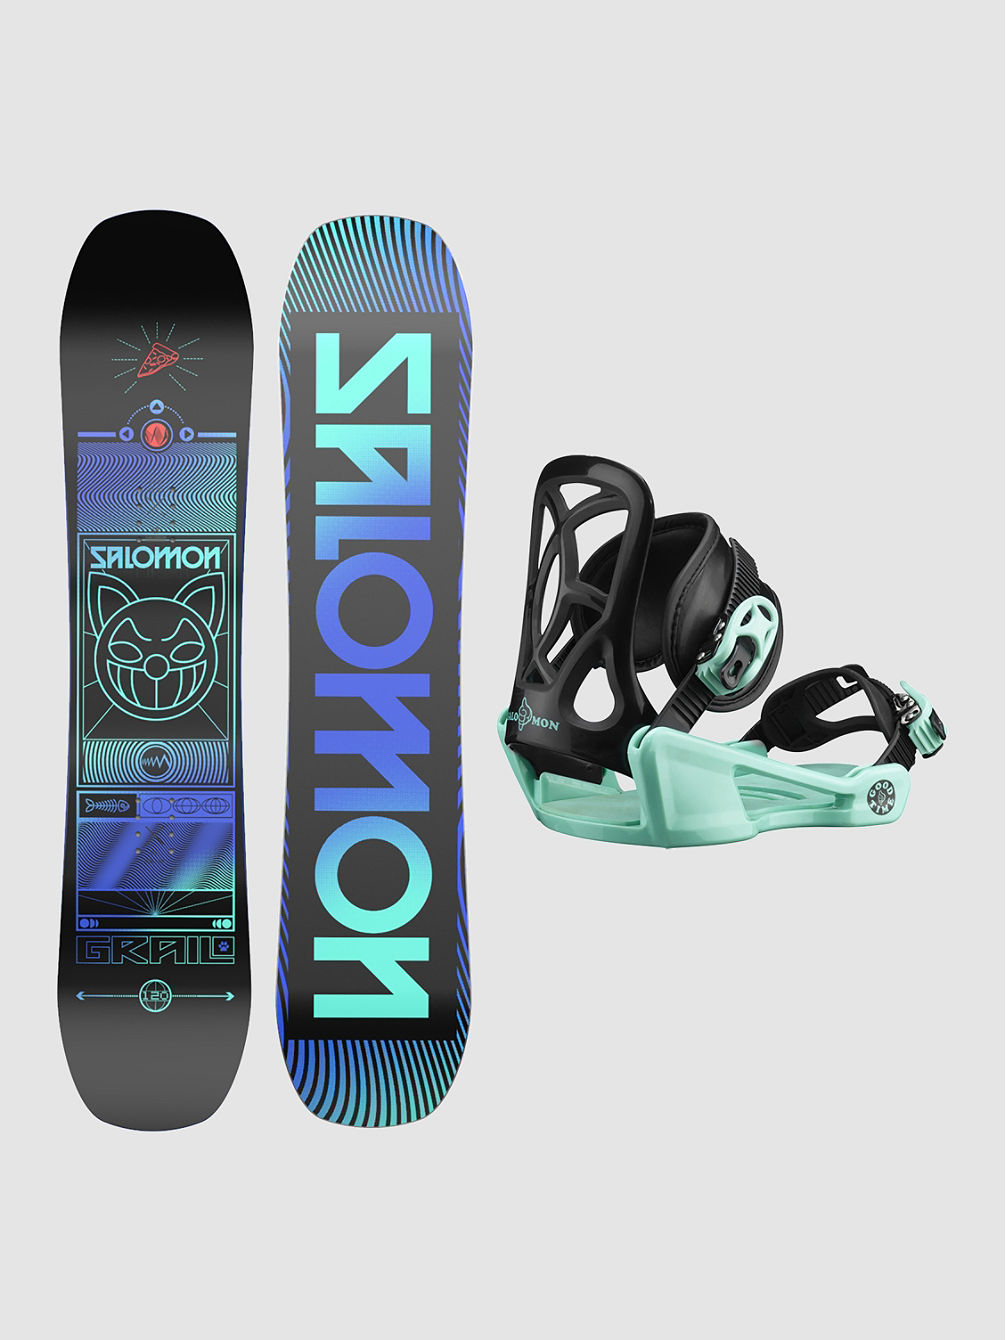 Grail 110 + Goodtime XS 2023 Snowboardpakke